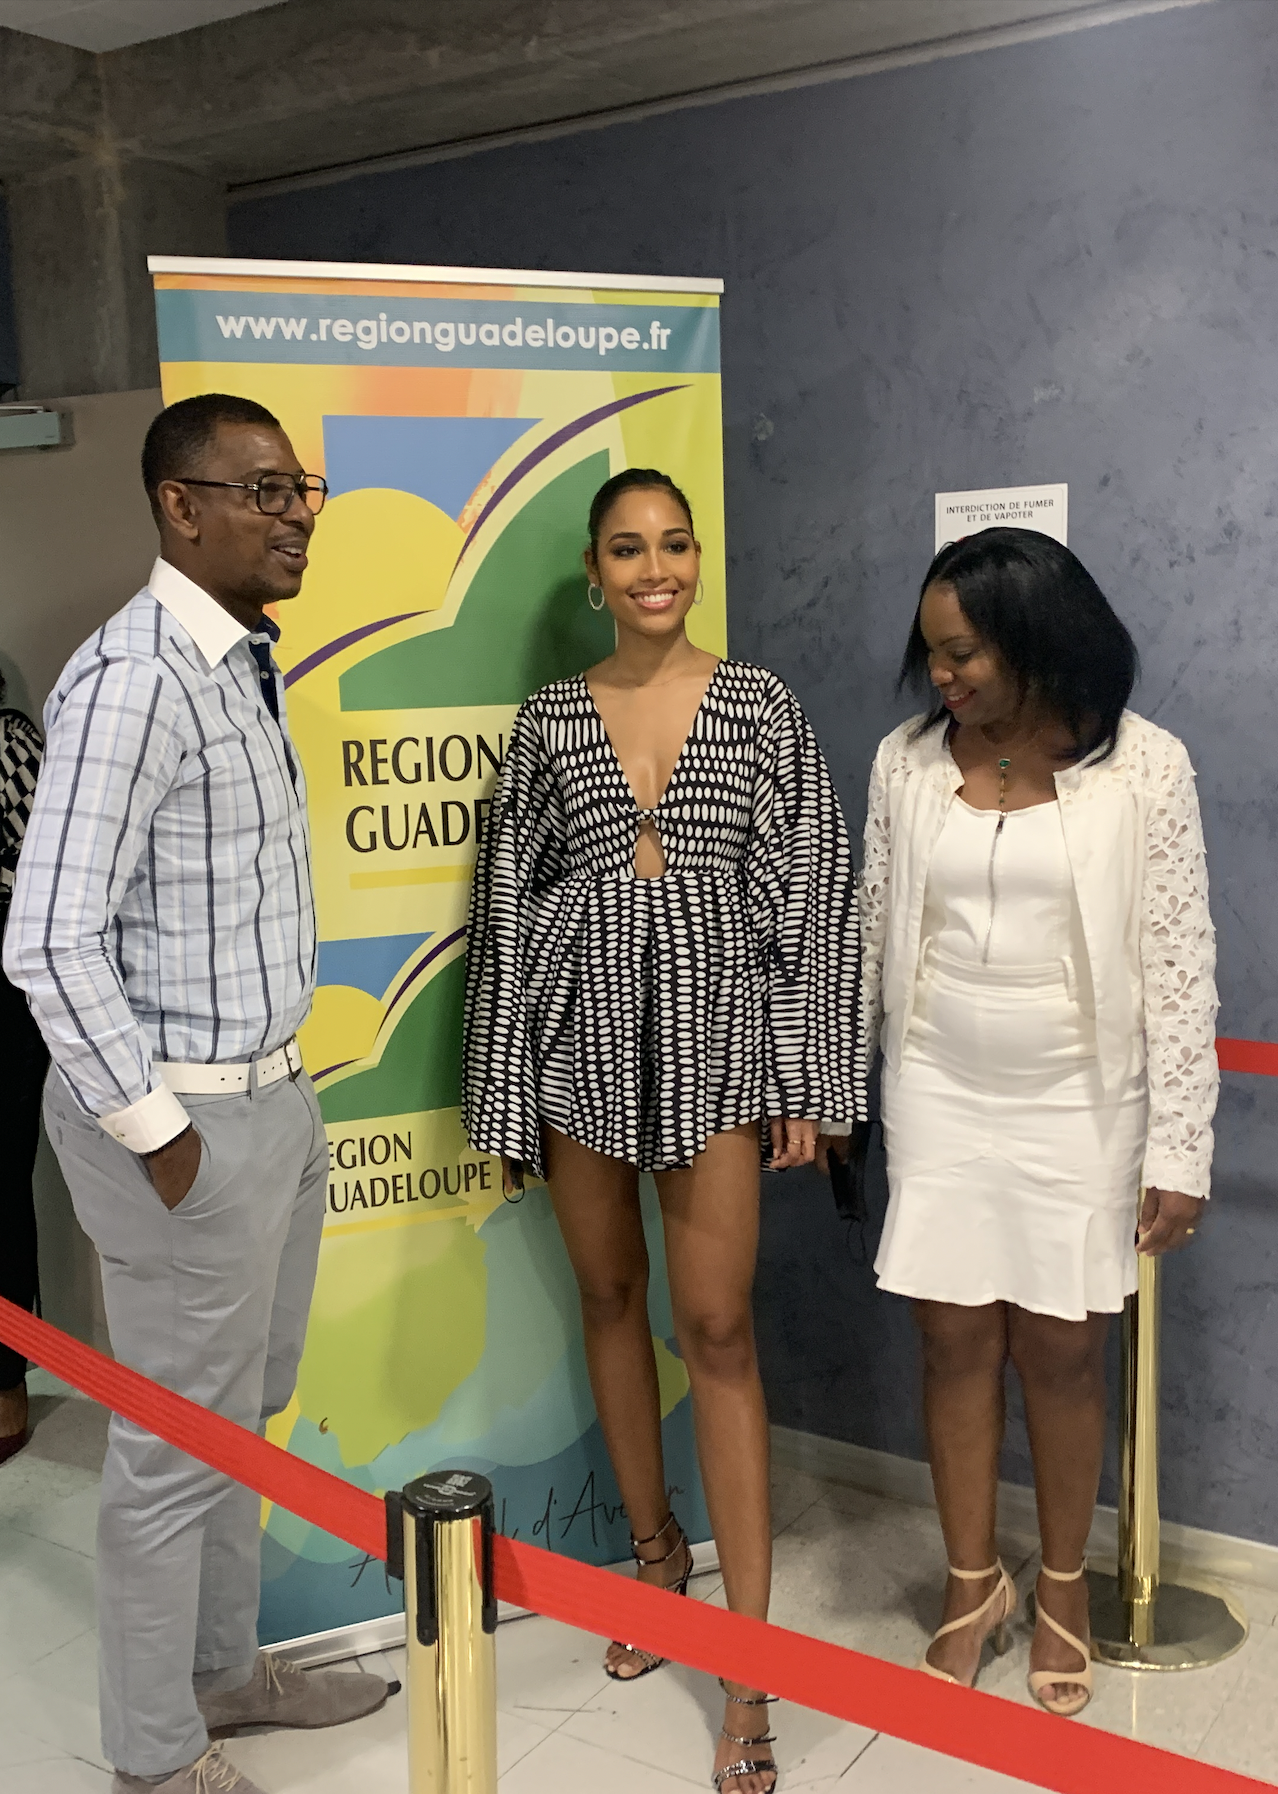     Après l'expérience Miss Univers, Clémence Botino de retour en Guadeloupe 

